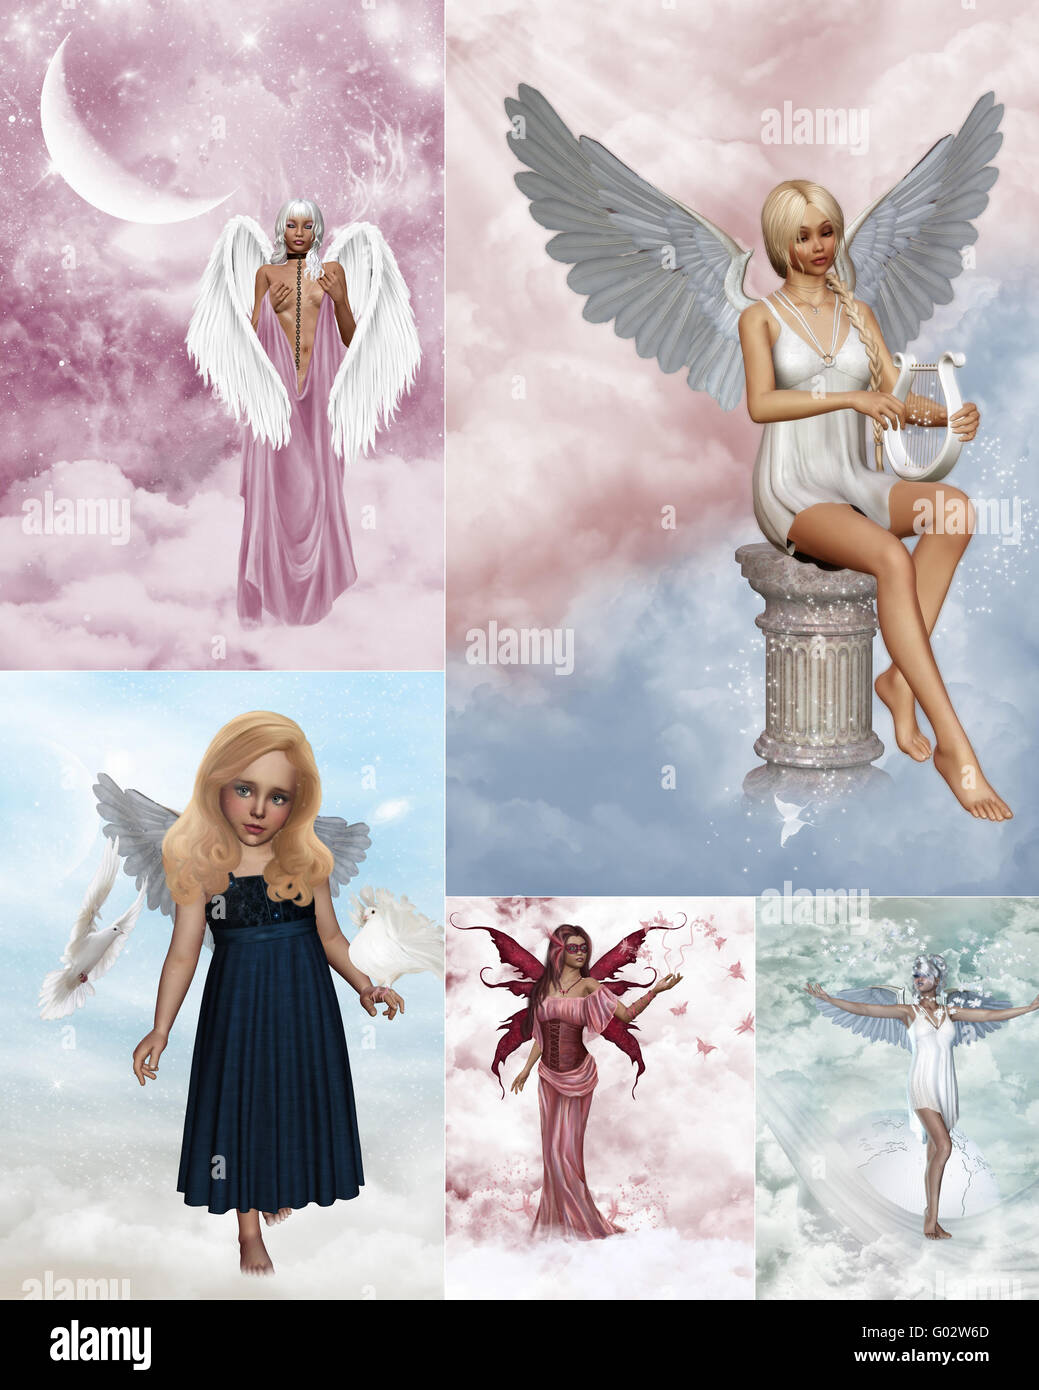 Un collage d'images à l'ange gardien de rêve Banque D'Images